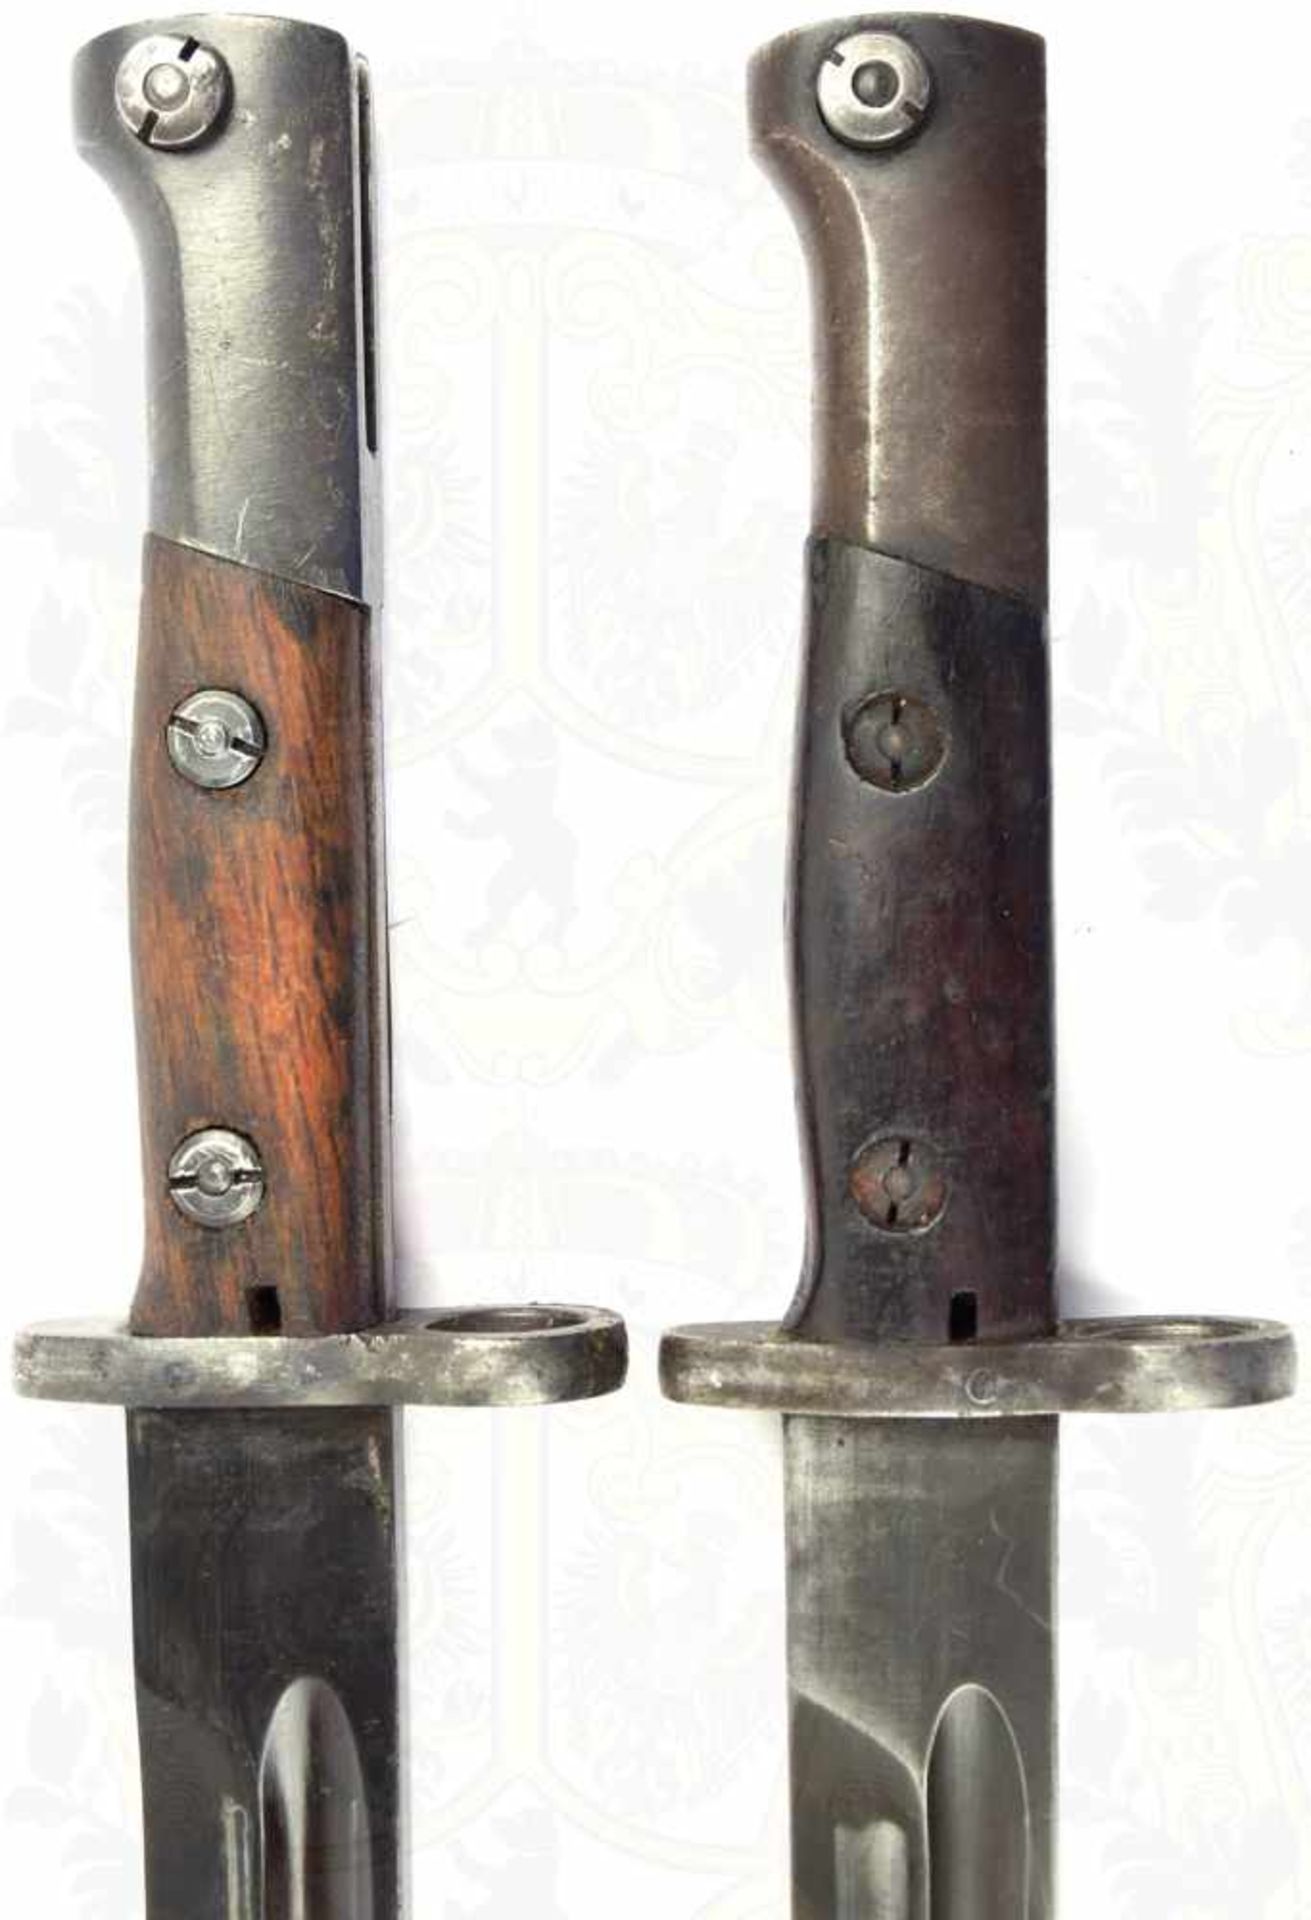 2 BAJONETTE M 24, Belgien Exportmodell, brünierte Klingen, L. 38cm, Griffteile Eisen/brüniert, - Bild 3 aus 4